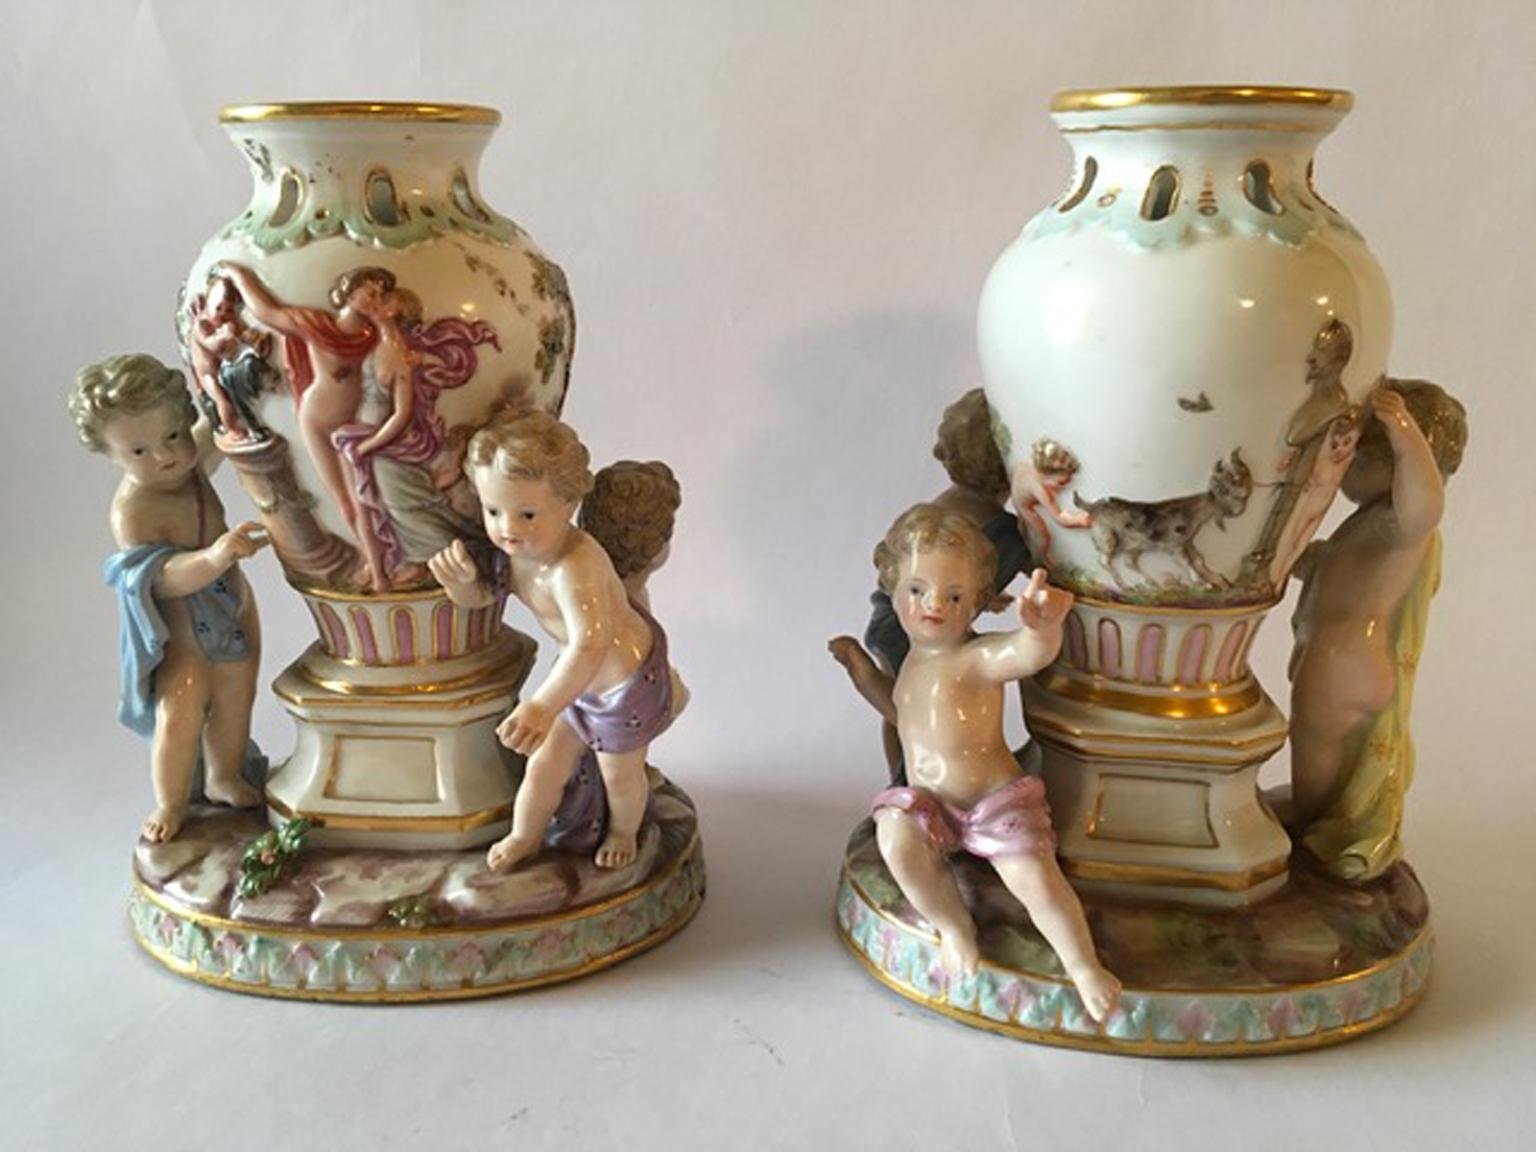 Elegante paire de vases de Meissen sur pied avec des figures d'enfants. Les vases sont décorés de scènes mythologiques sur la surface.
Marqué au pied.
Avec certificat d'authenticité.
Deux bras restaurés.

 